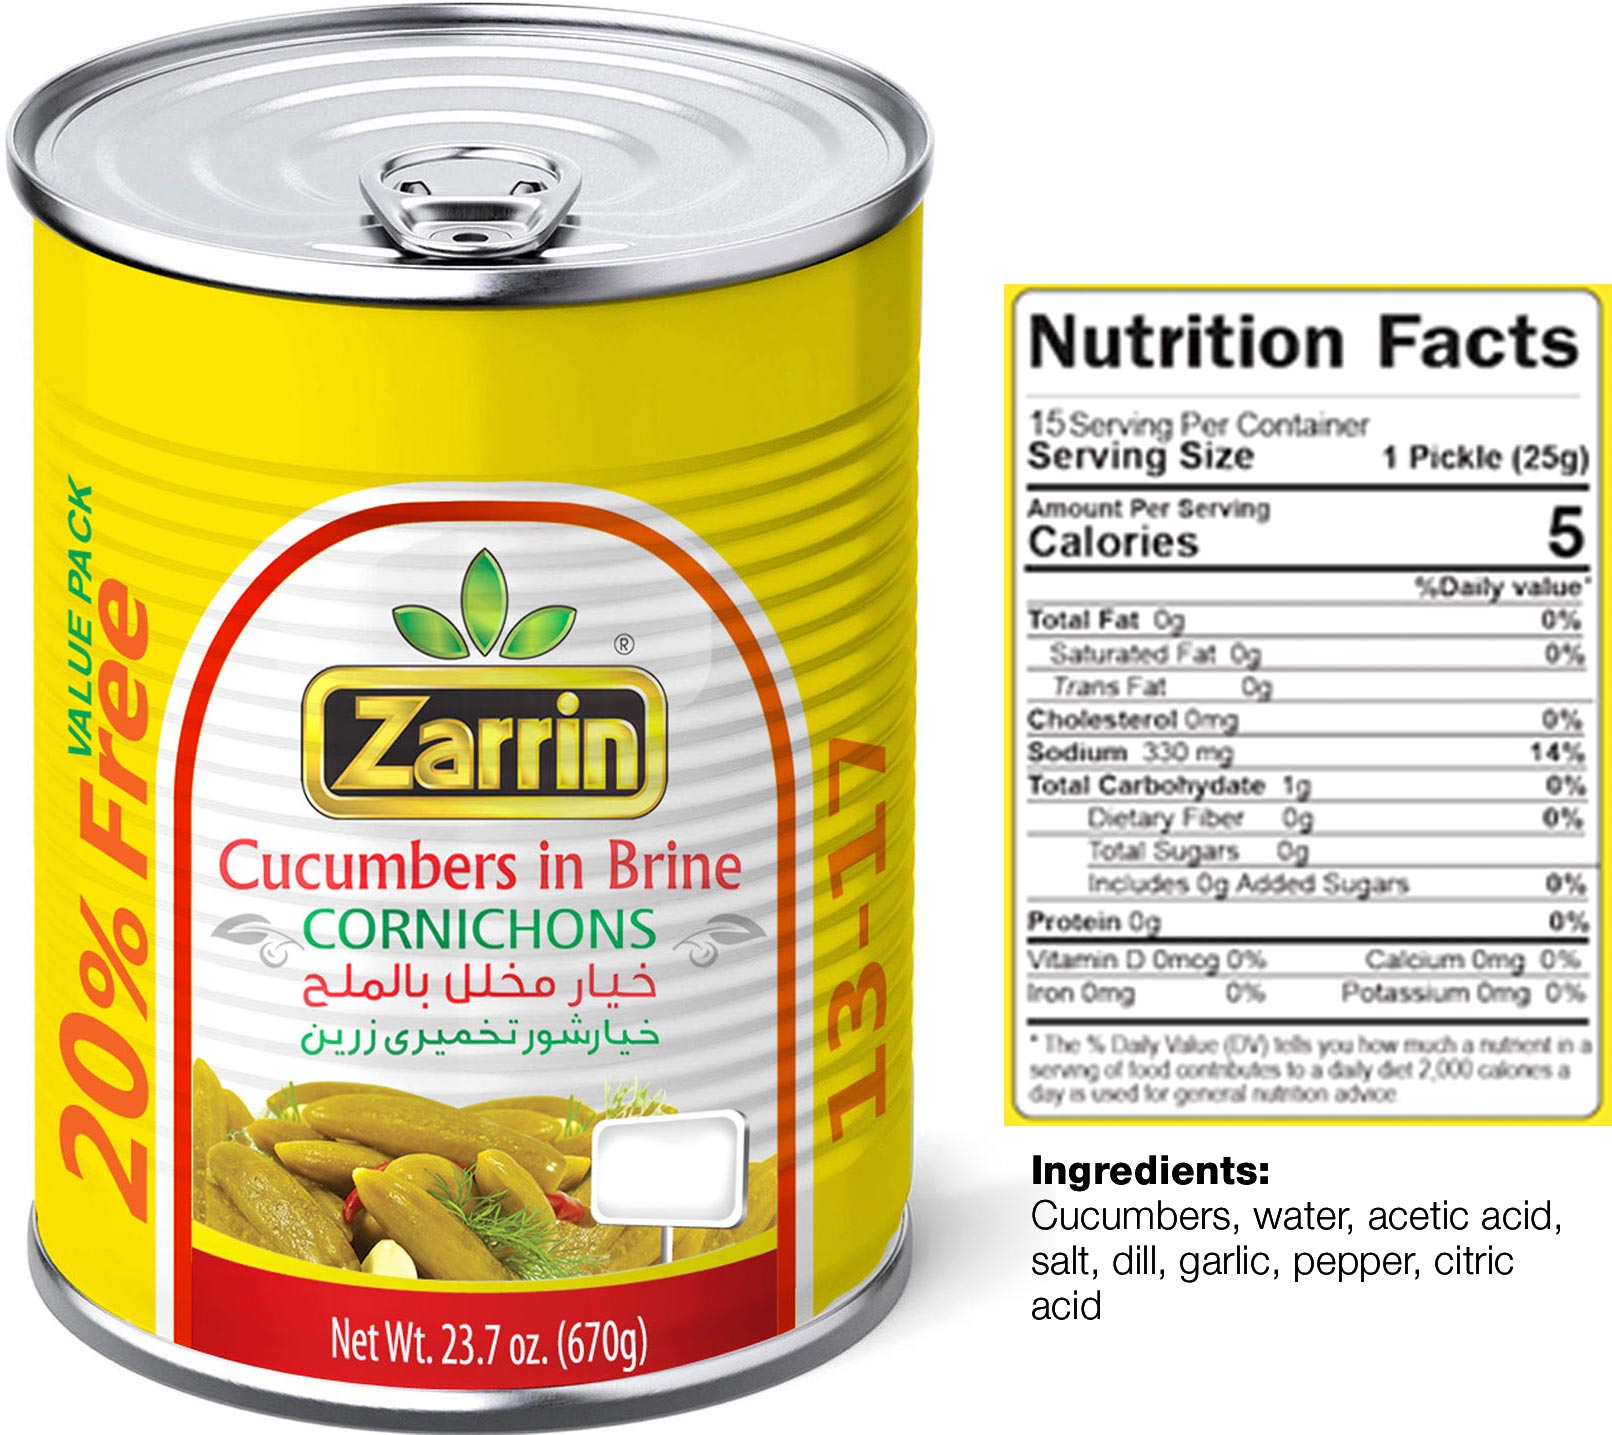 Zarrin cucumbers in brine (cornichons) in can 13-17 plus 20% free.